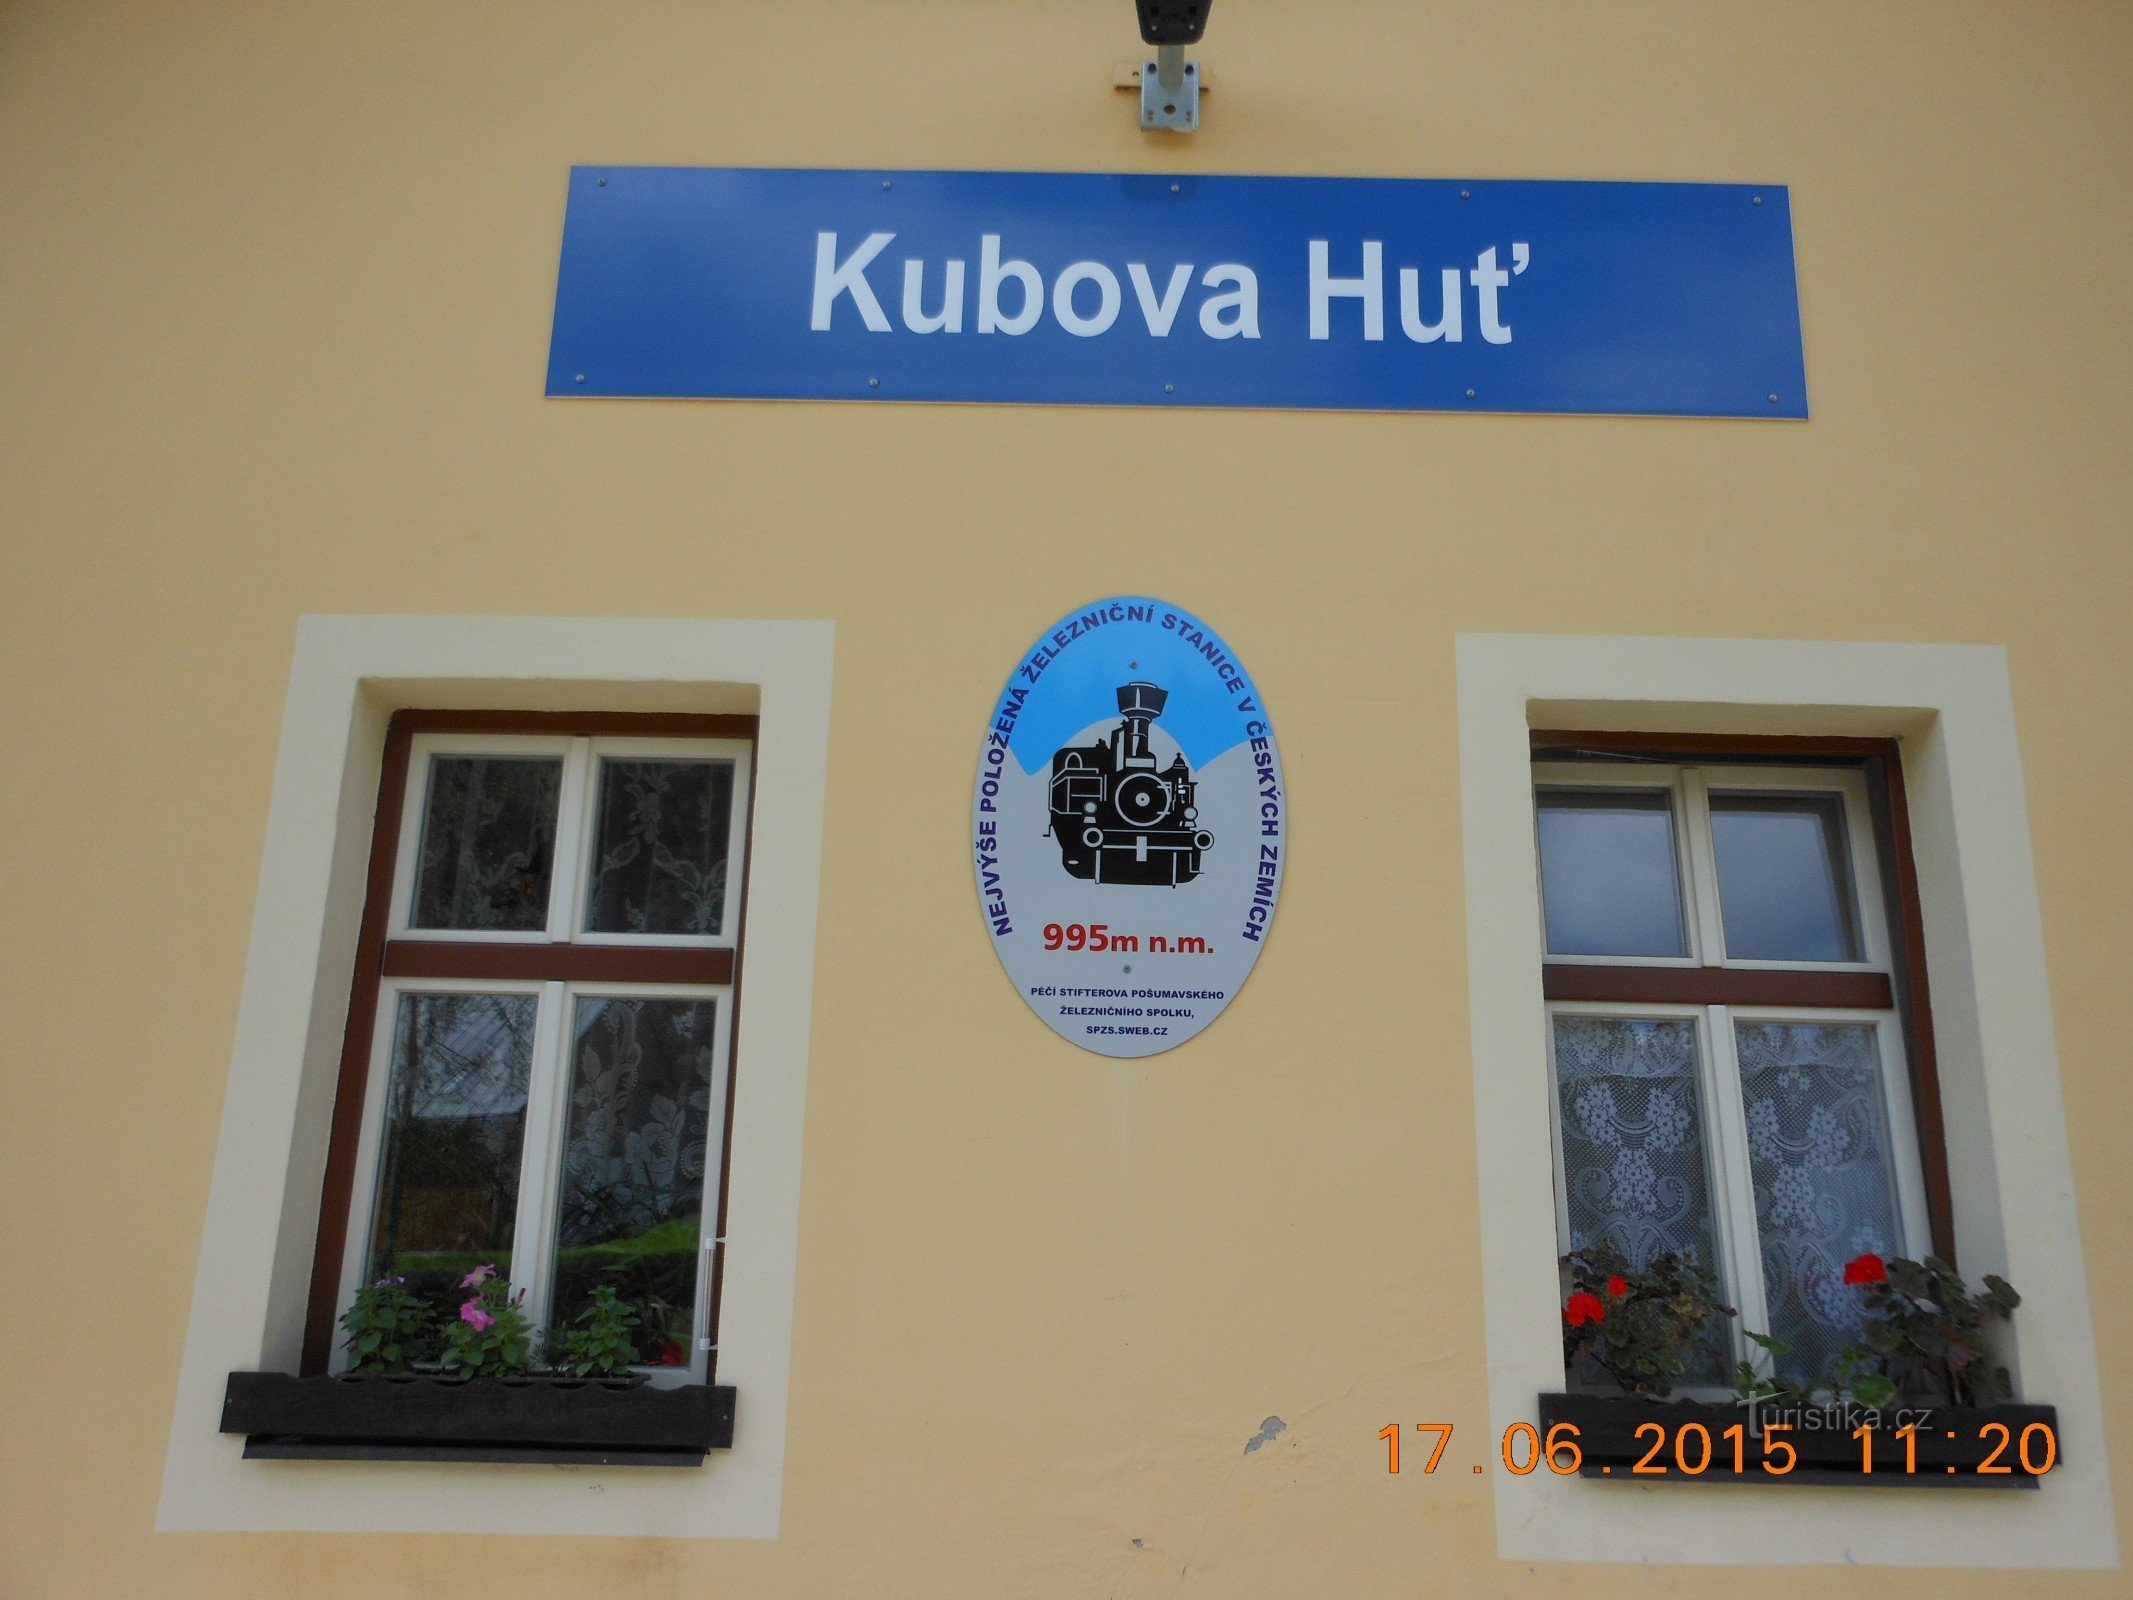 Kubova Huť - ga đường sắt cao nhất ở Bohemia